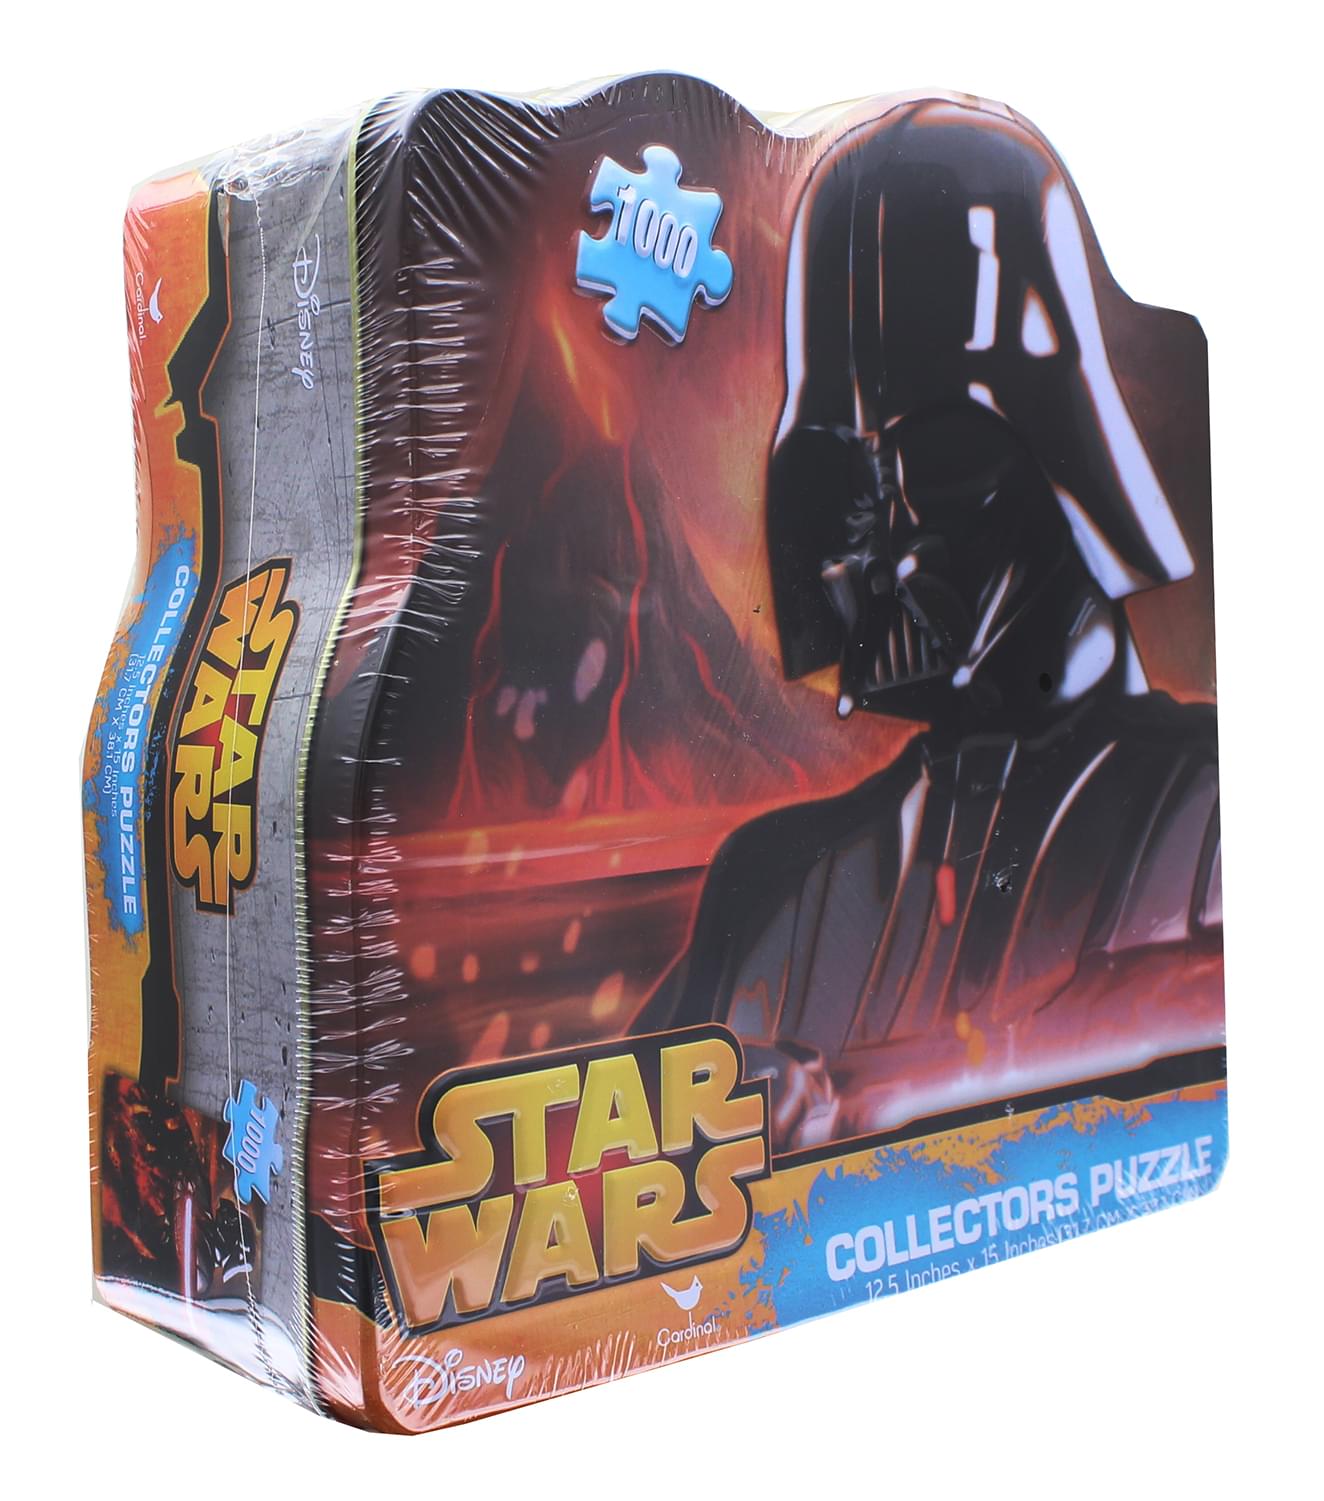 Star Wars 1000 Piece Collectors Tin Puzzle, Darth Vader